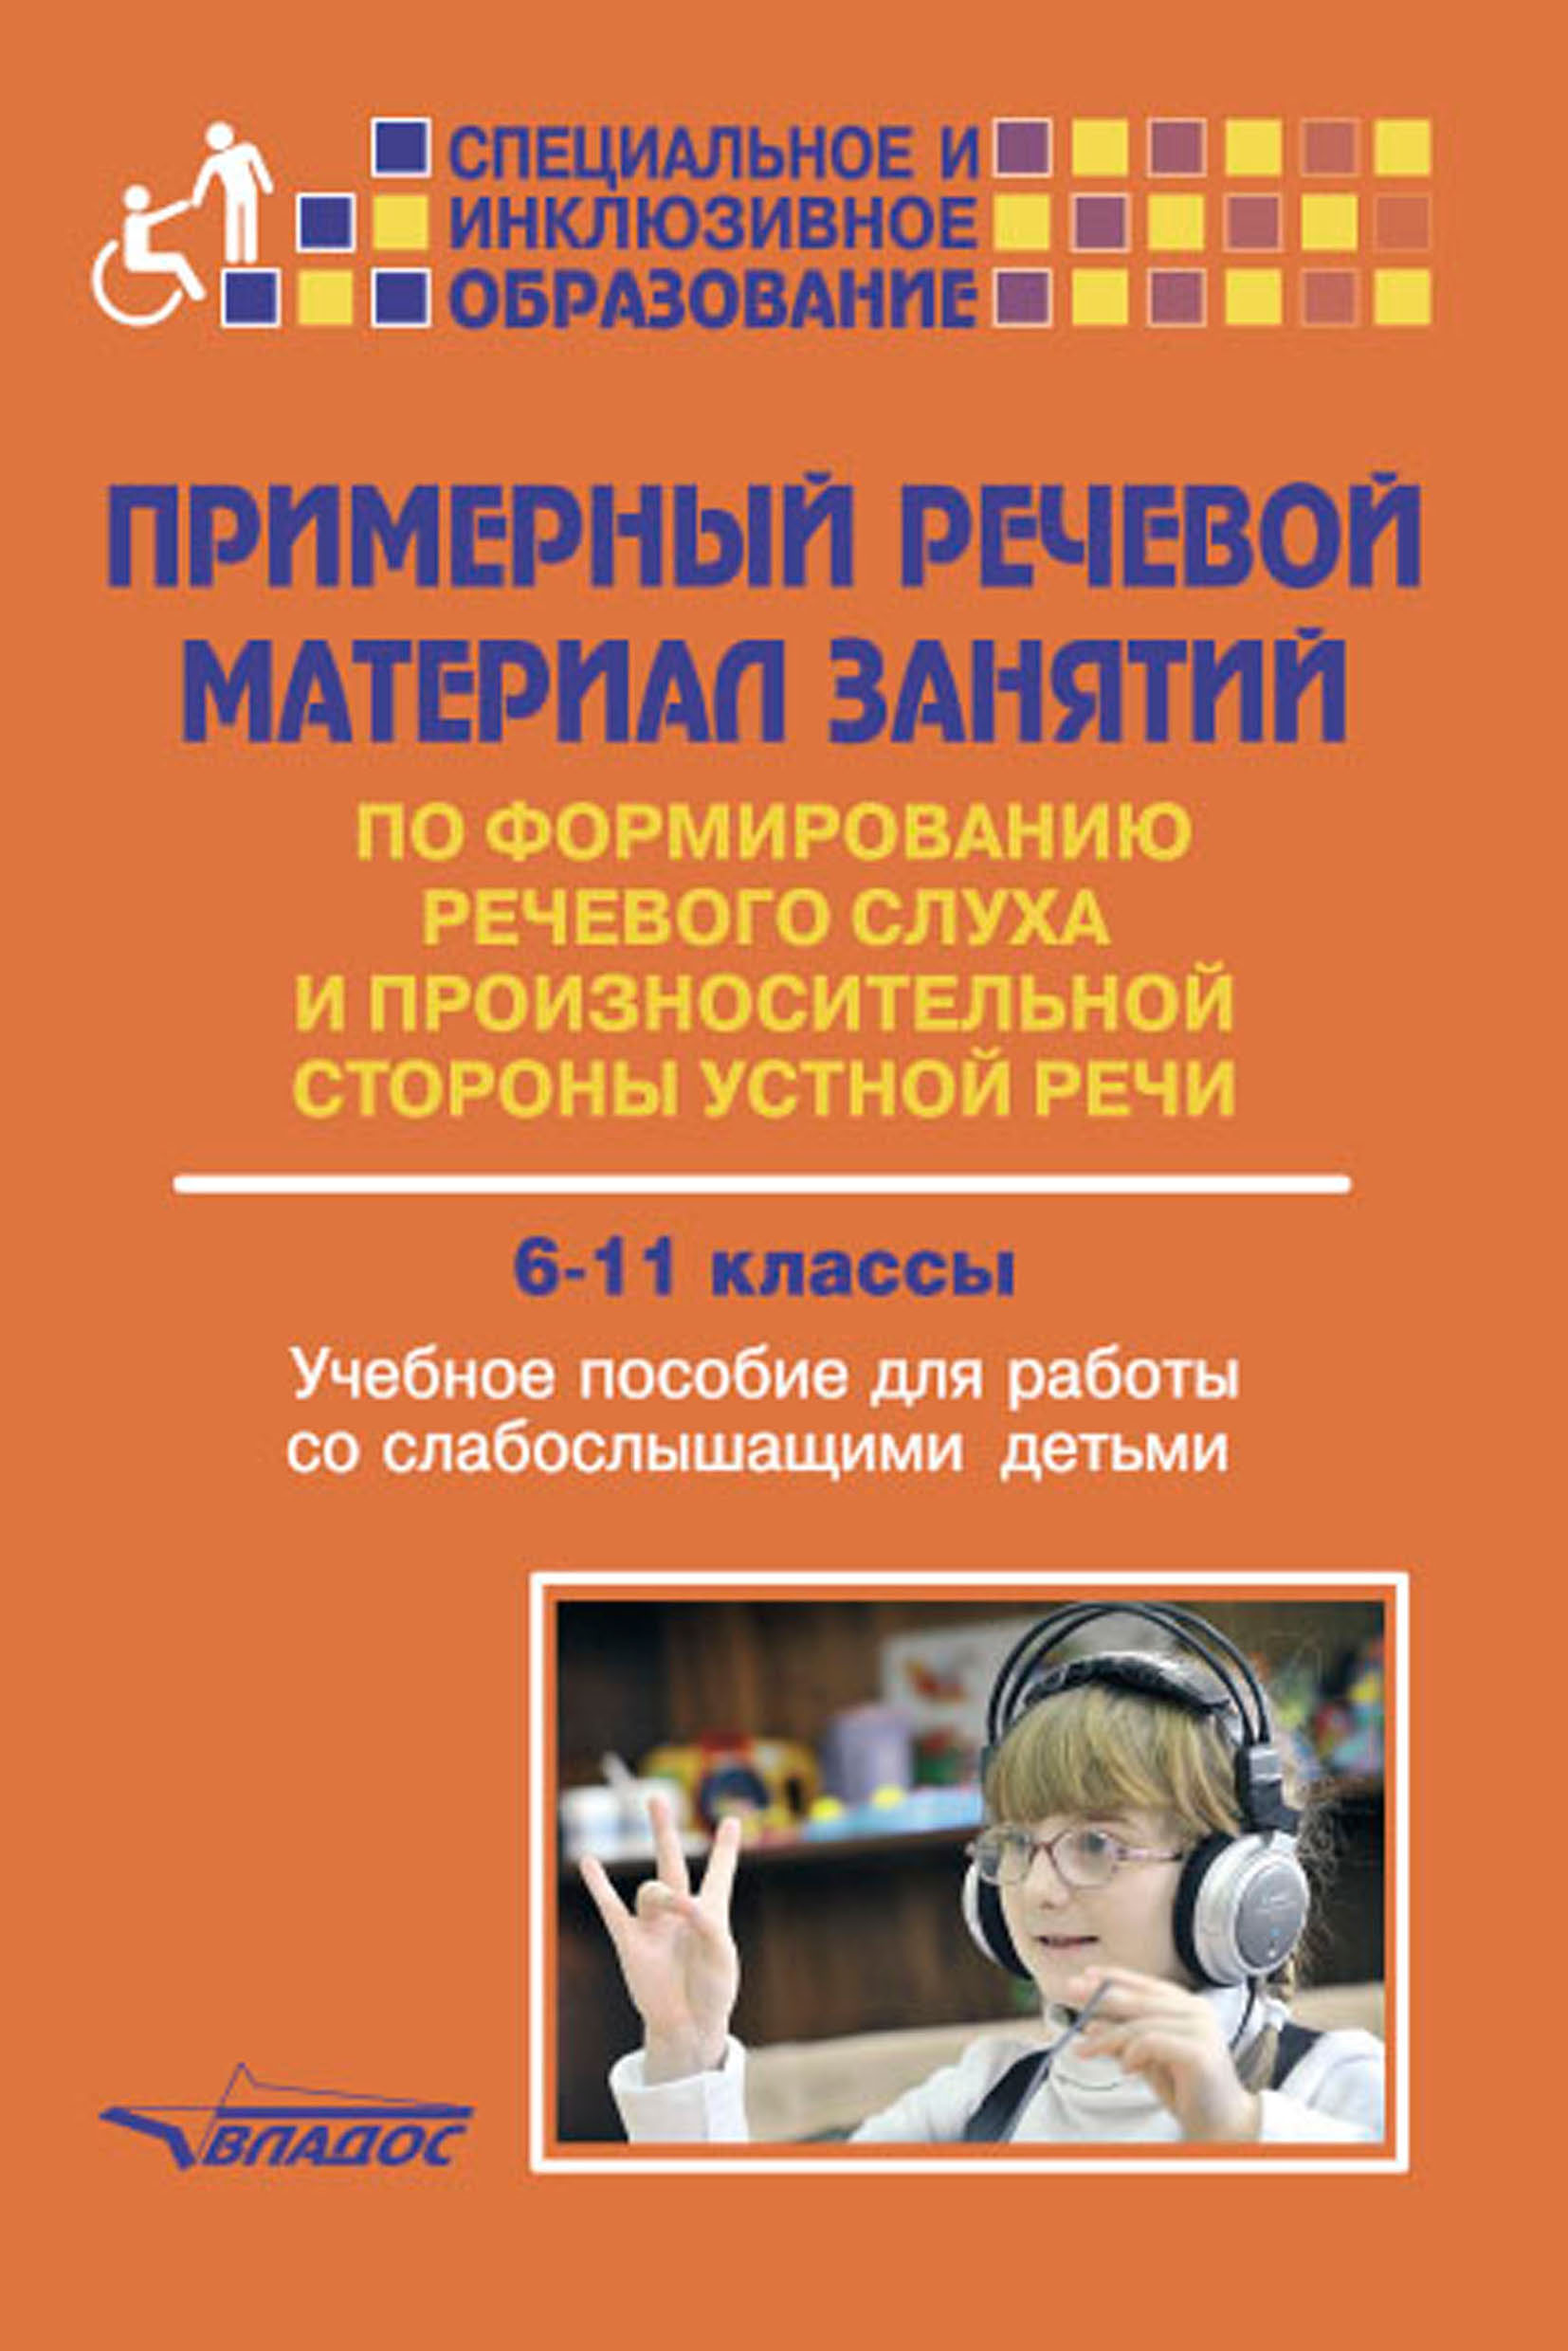 Программа для слабослышащих детей. Учебное пособие для слабослышащих детей. Книги по формированию речевого слуха. Примерный речевой материал занятий по формированию. Пособия для детей с нарушением слуха.